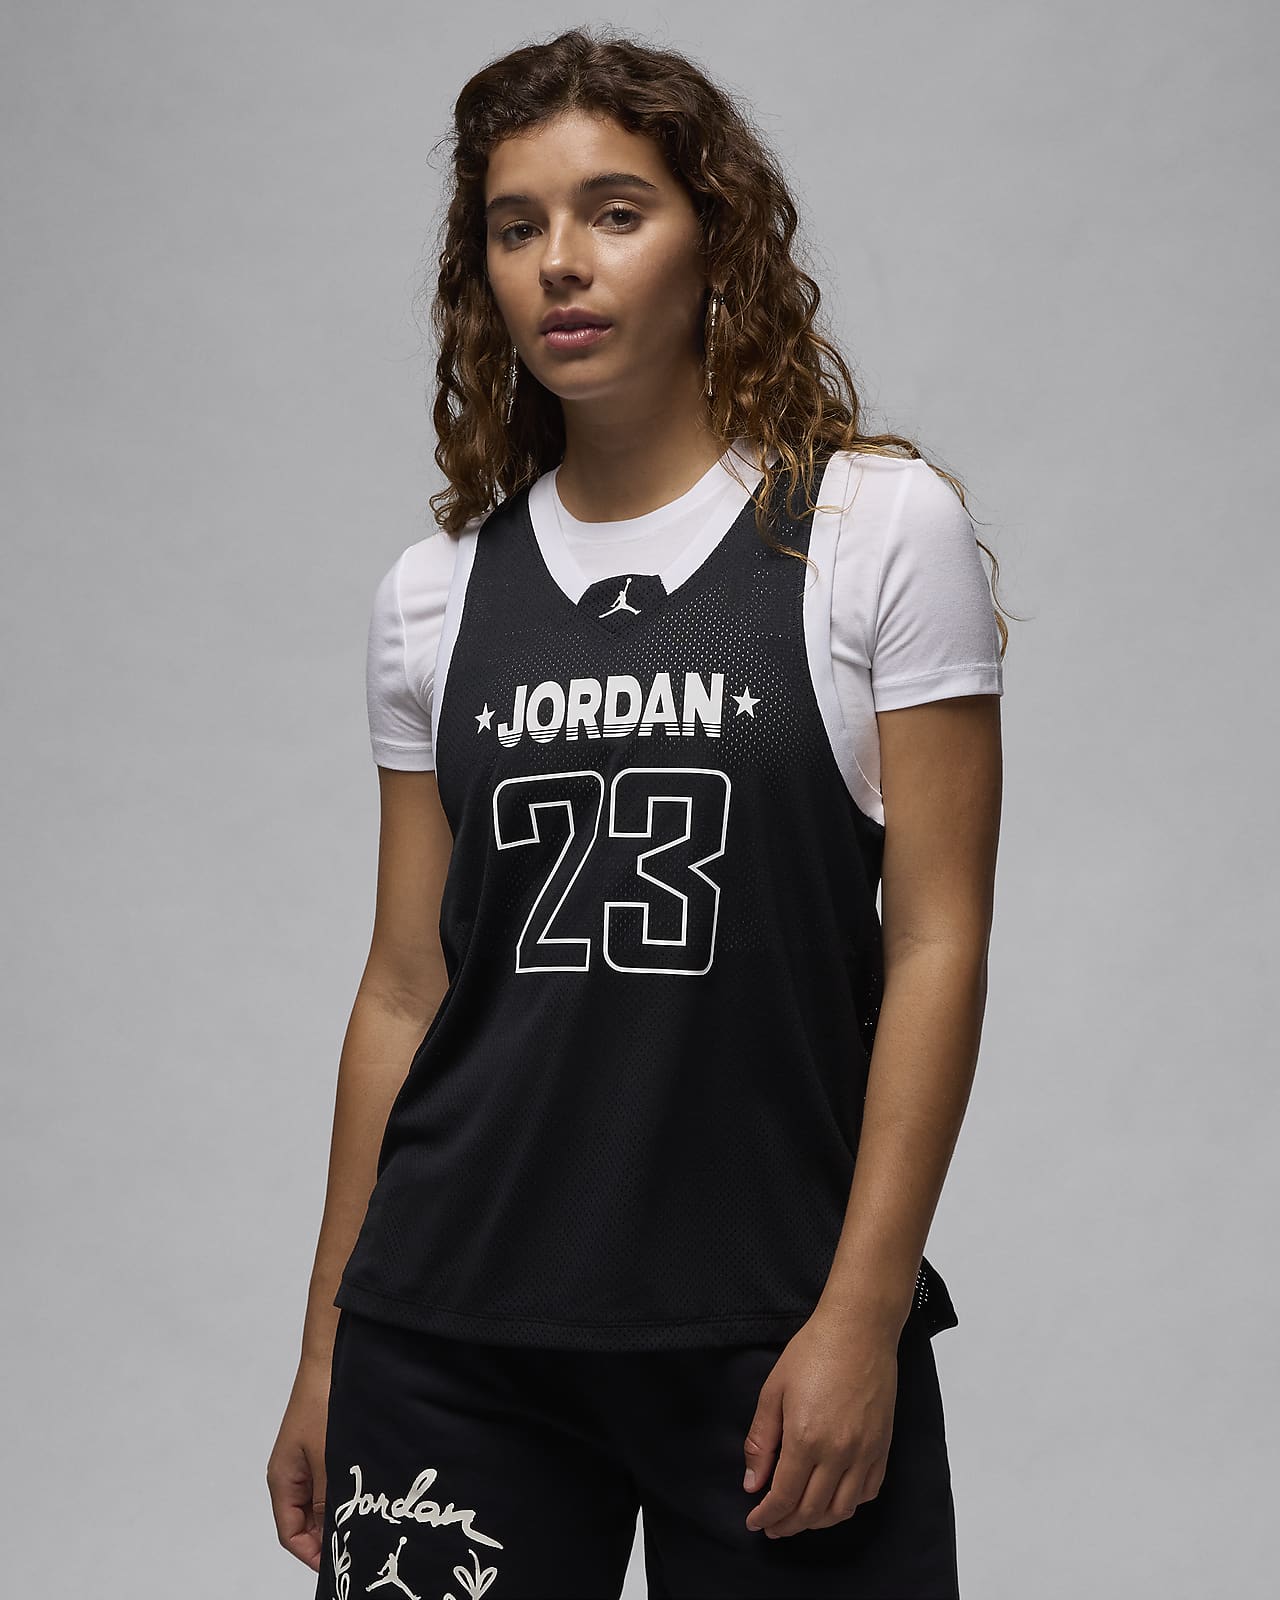 Jordan 23 Jersey Camiseta de tirantes - Mujer